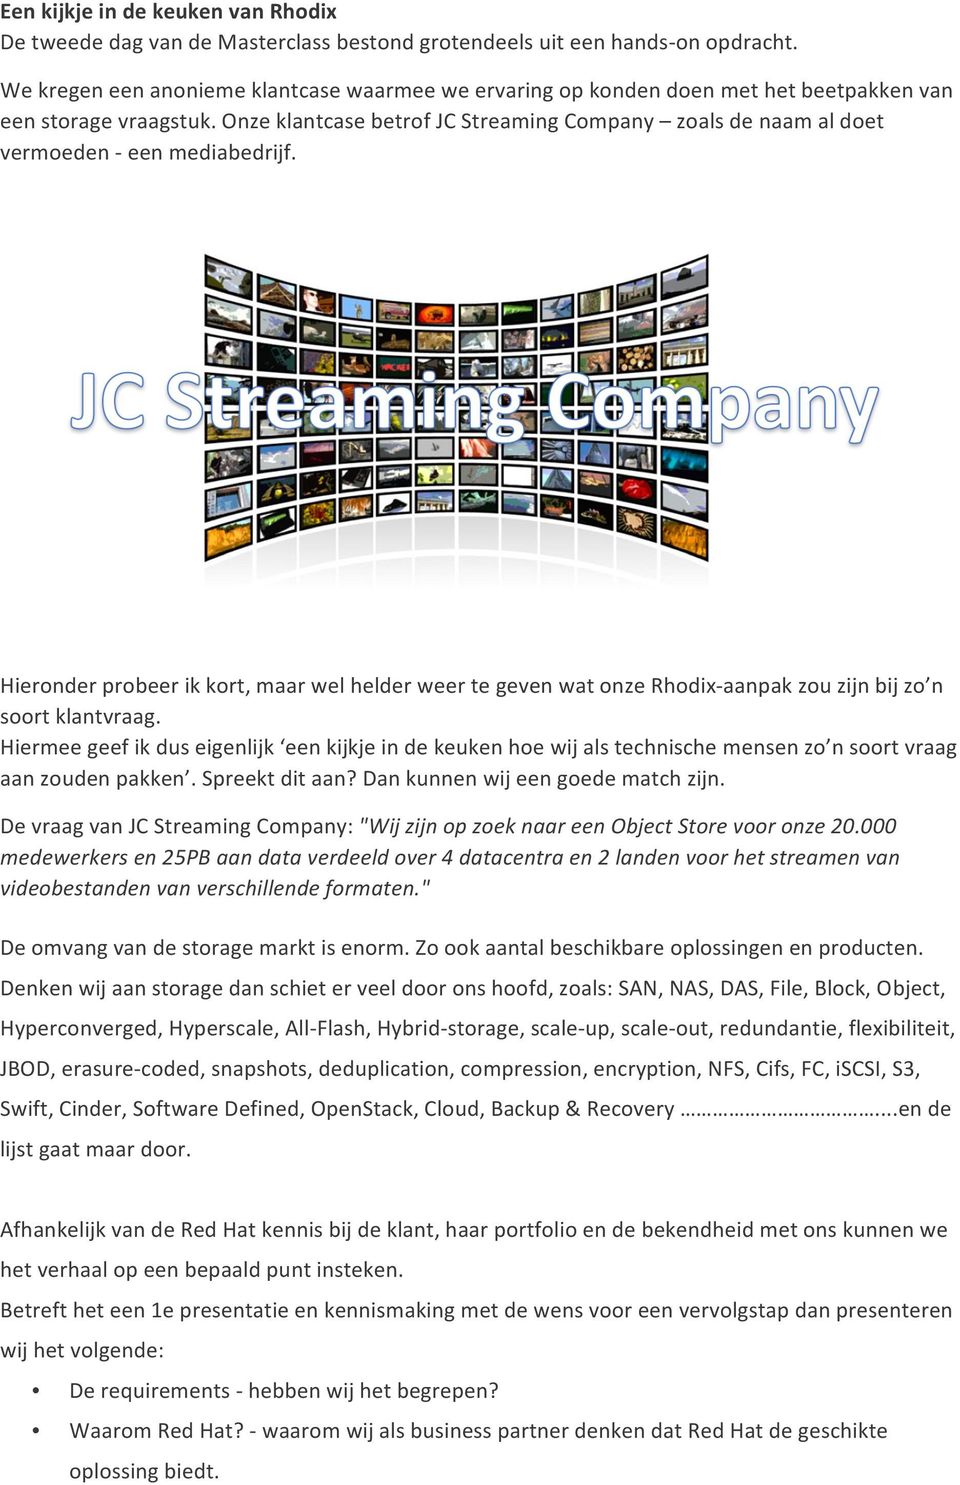 Onze klantcase betrof JC Streaming Company zoals de naam al doet vermoeden - een mediabedrijf.